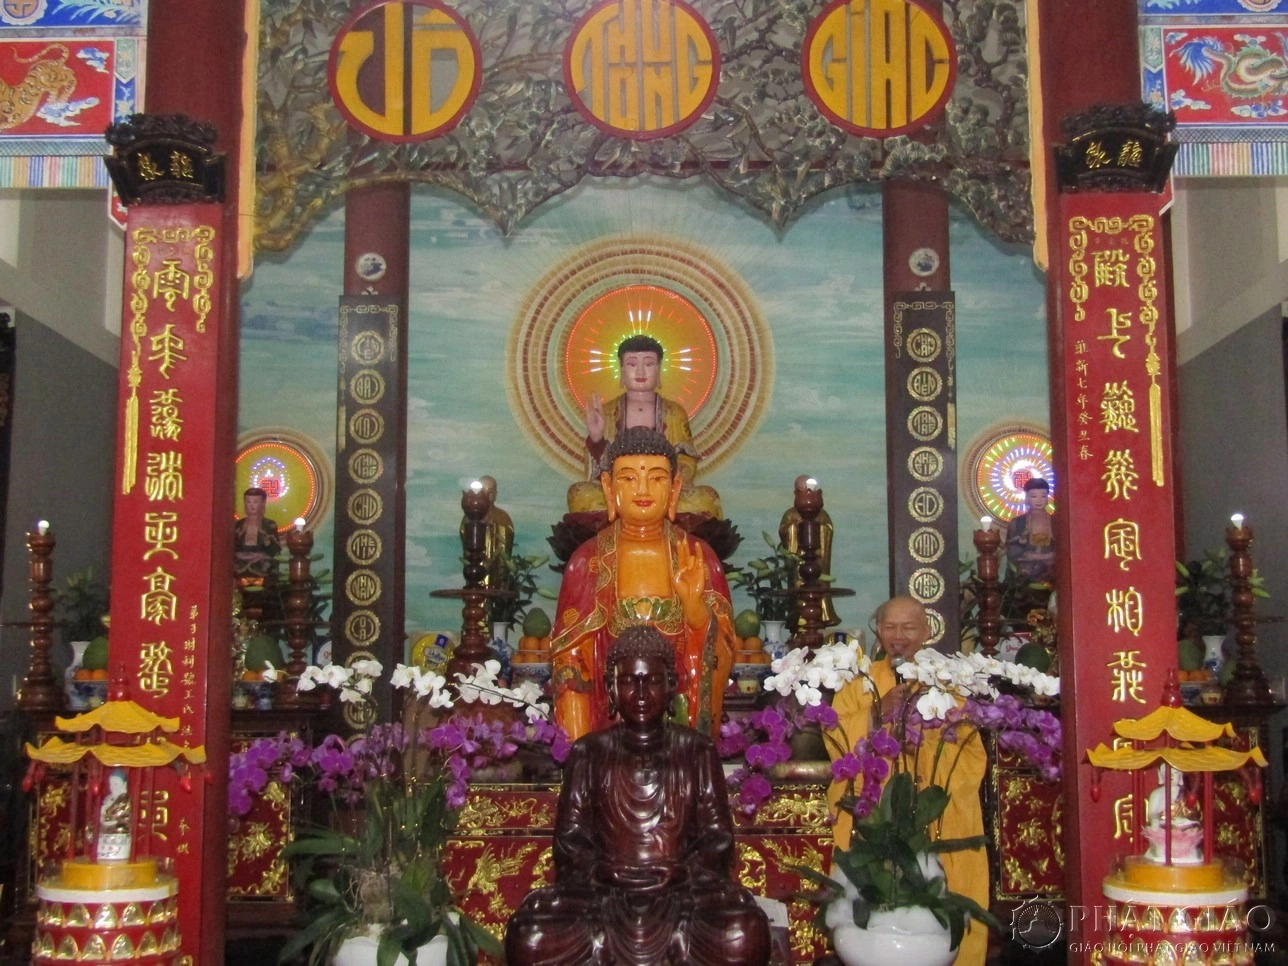 Chánh điện chùa Long Tuyền. Ảnh: phatgiao.org